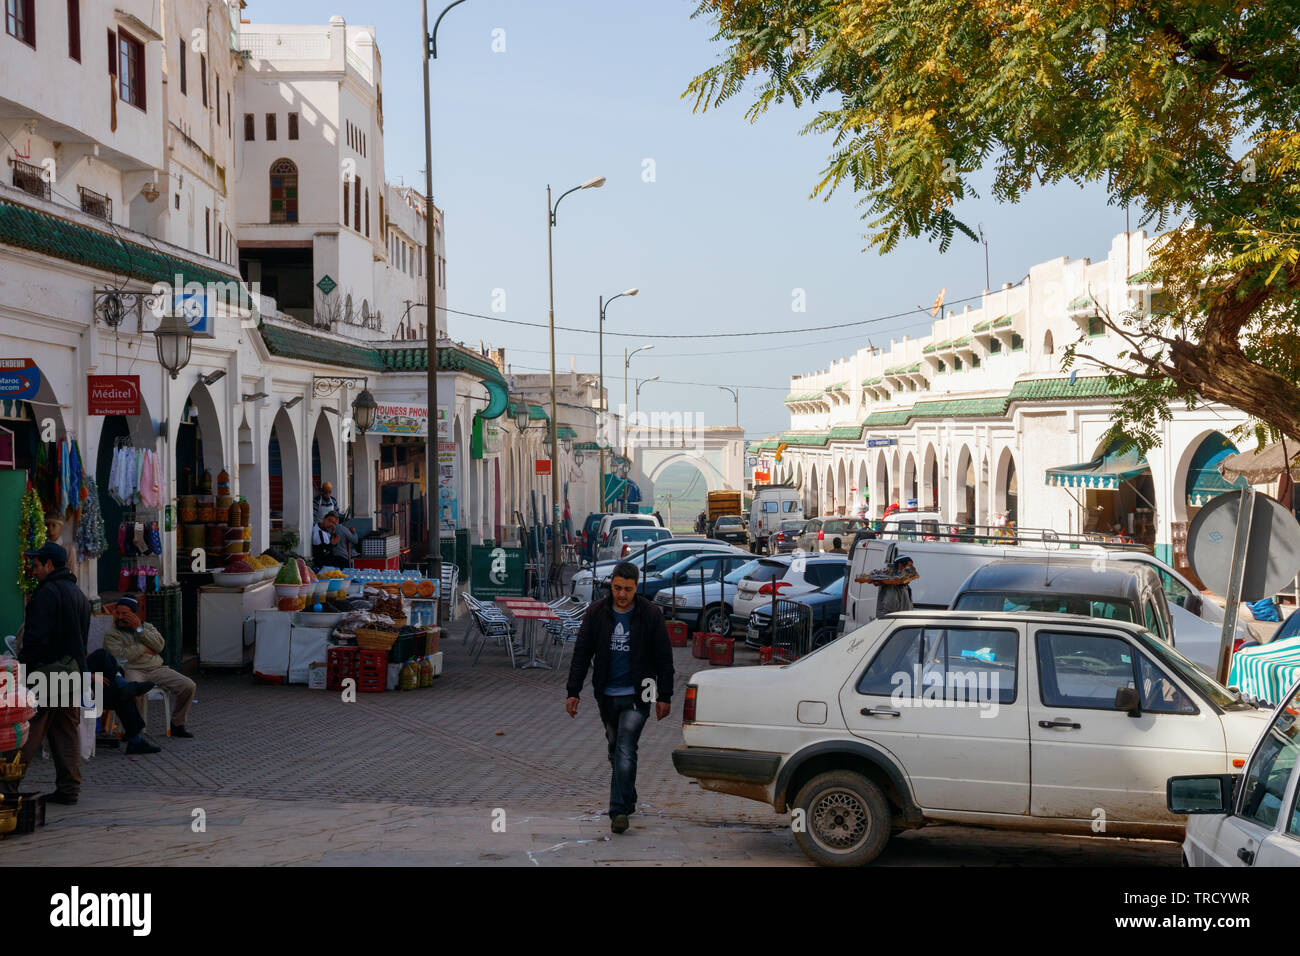 Rue principale de Moulay Idriss, un jour ensoleillé, avec des maisons blanches, des boutiques, des bars et des voitures en stationnement. Moulay Idriss Zerhoun, le Maroc. Banque D'Images